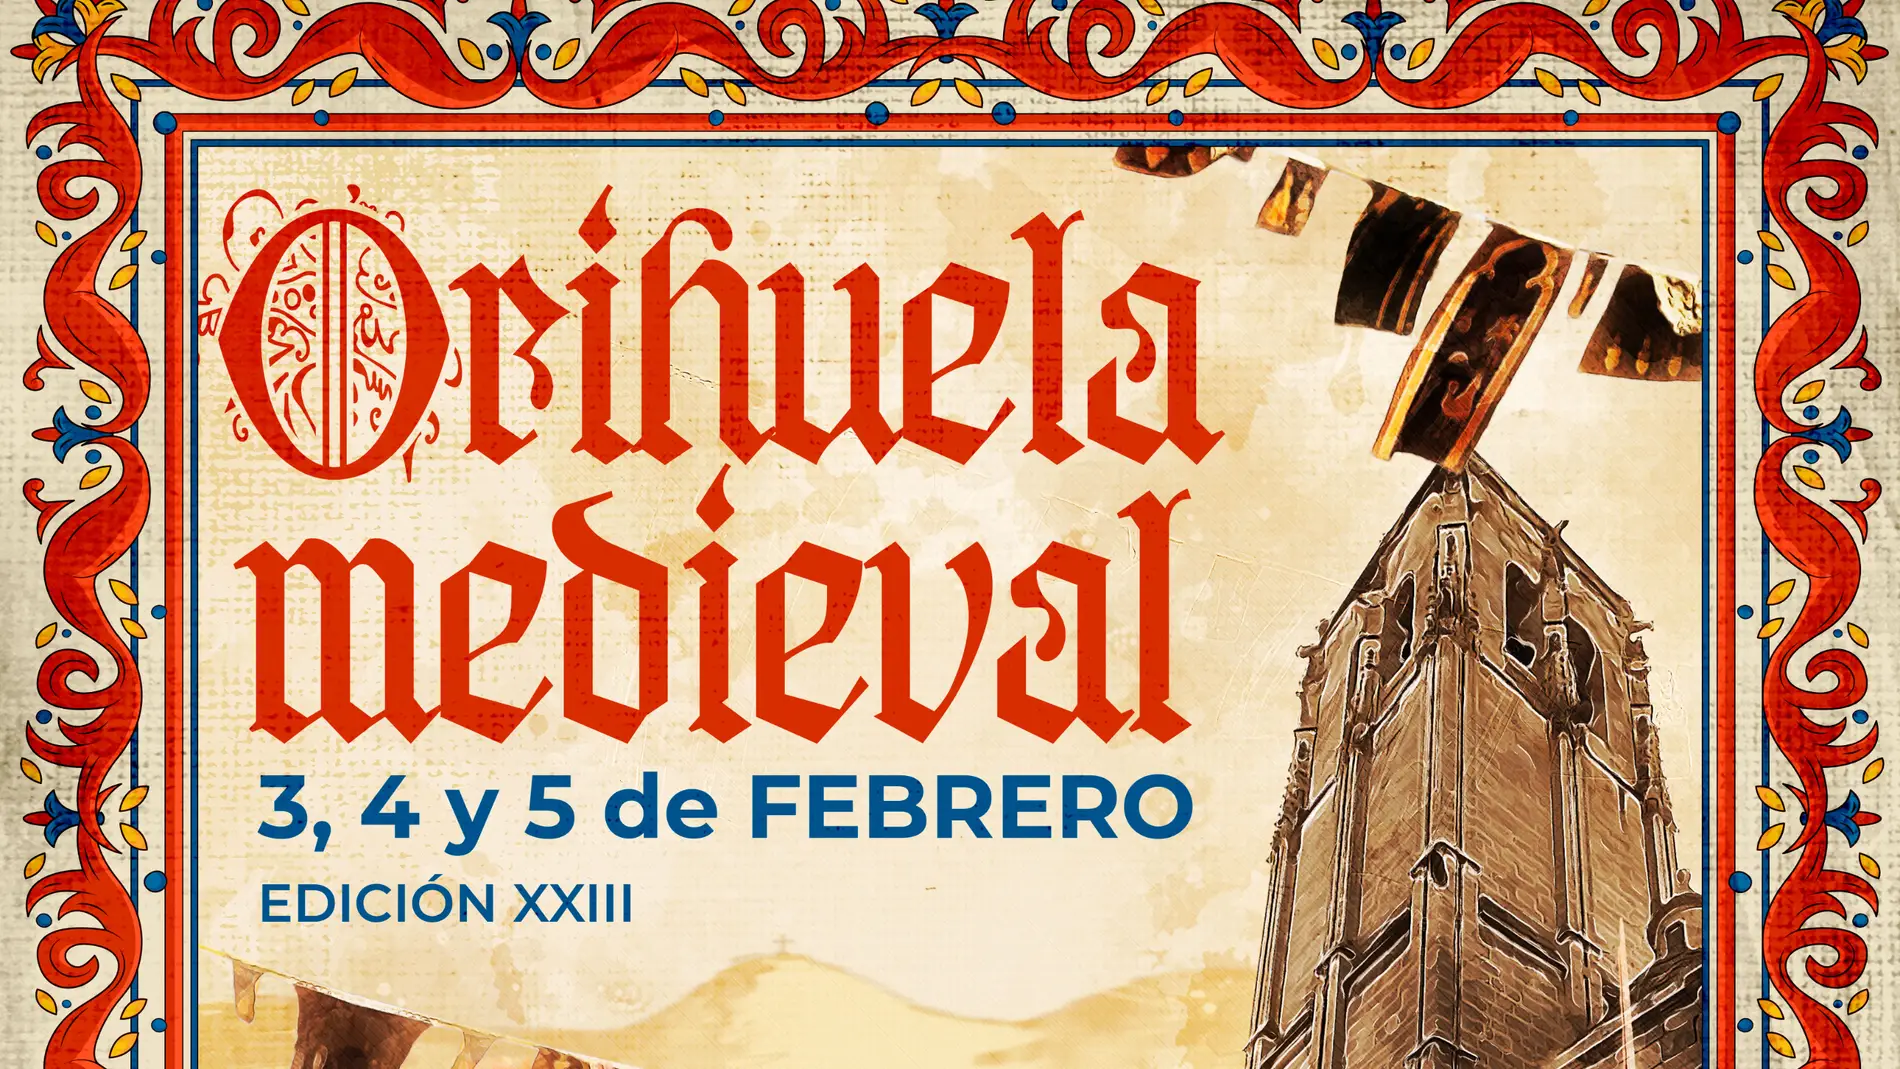 El Mercado Medieval vuelve a las calles de Orihuela los días 3, 4 y 5 de febrero 